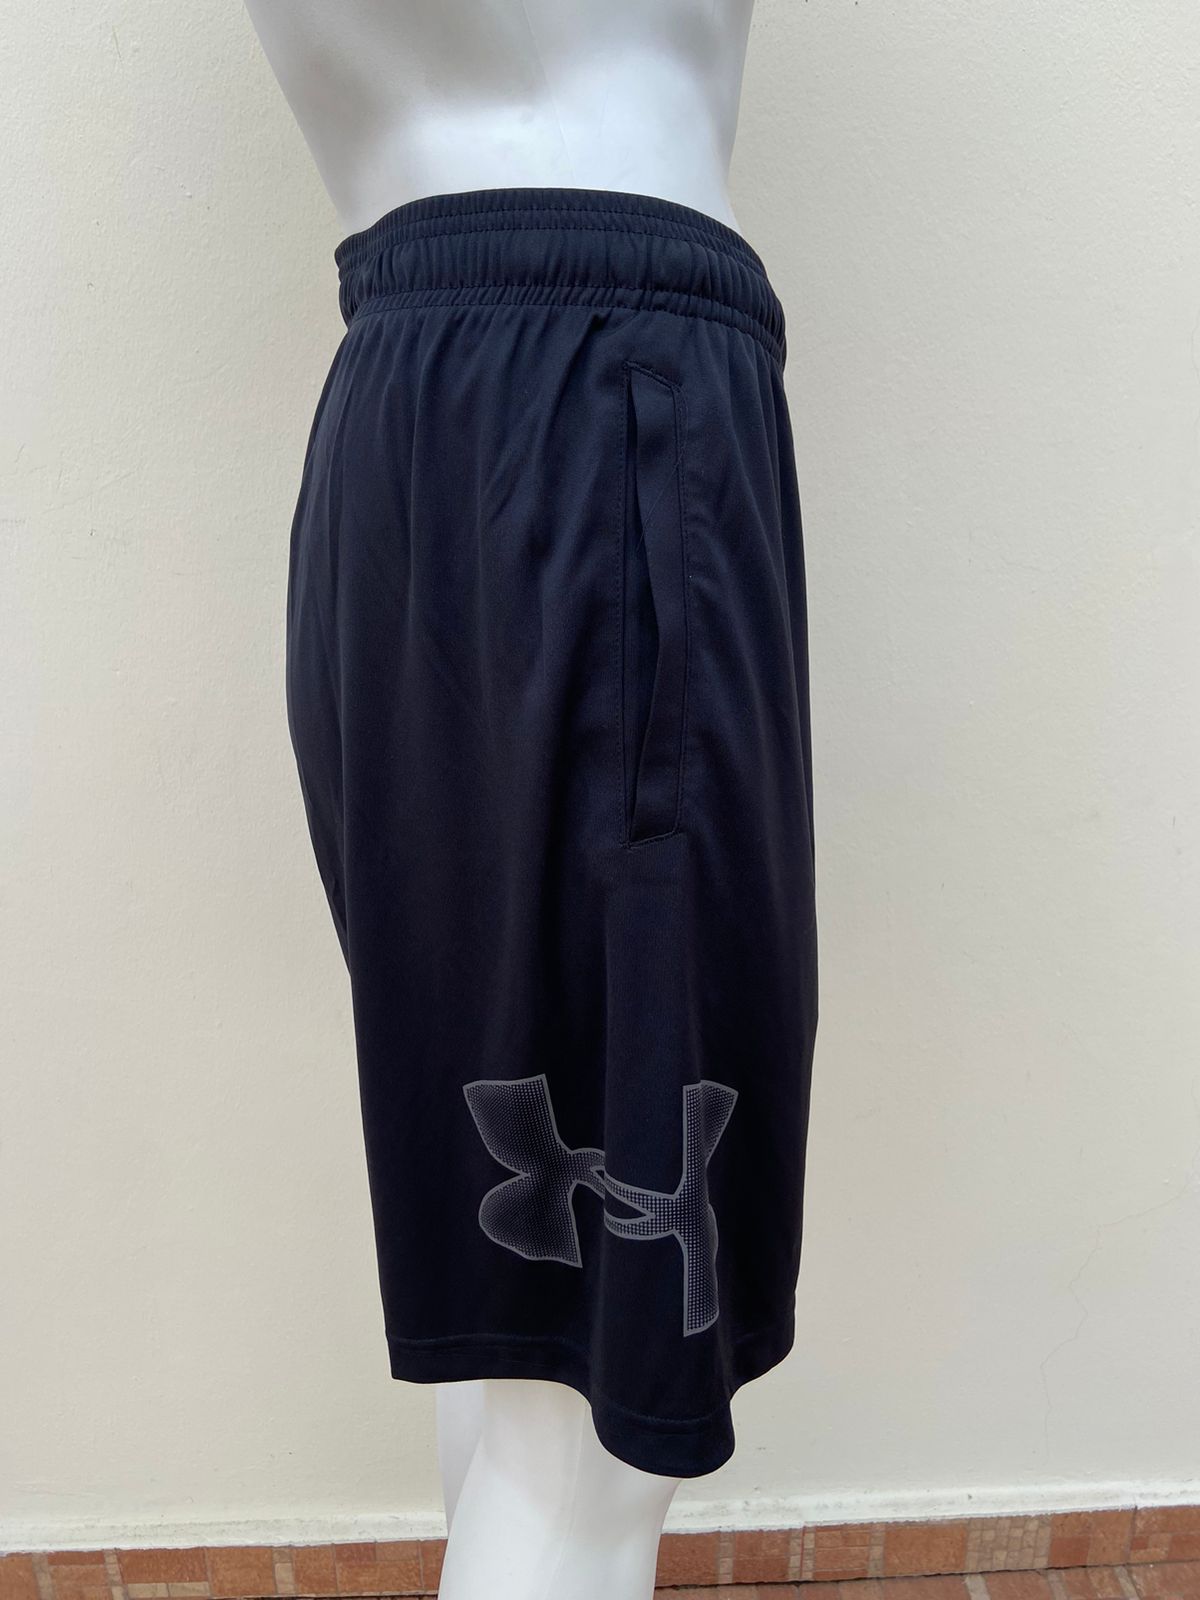 Shorts de gymnasio UNDER ARMOUR original negro con logotipo de la marca en un lado en color gris.